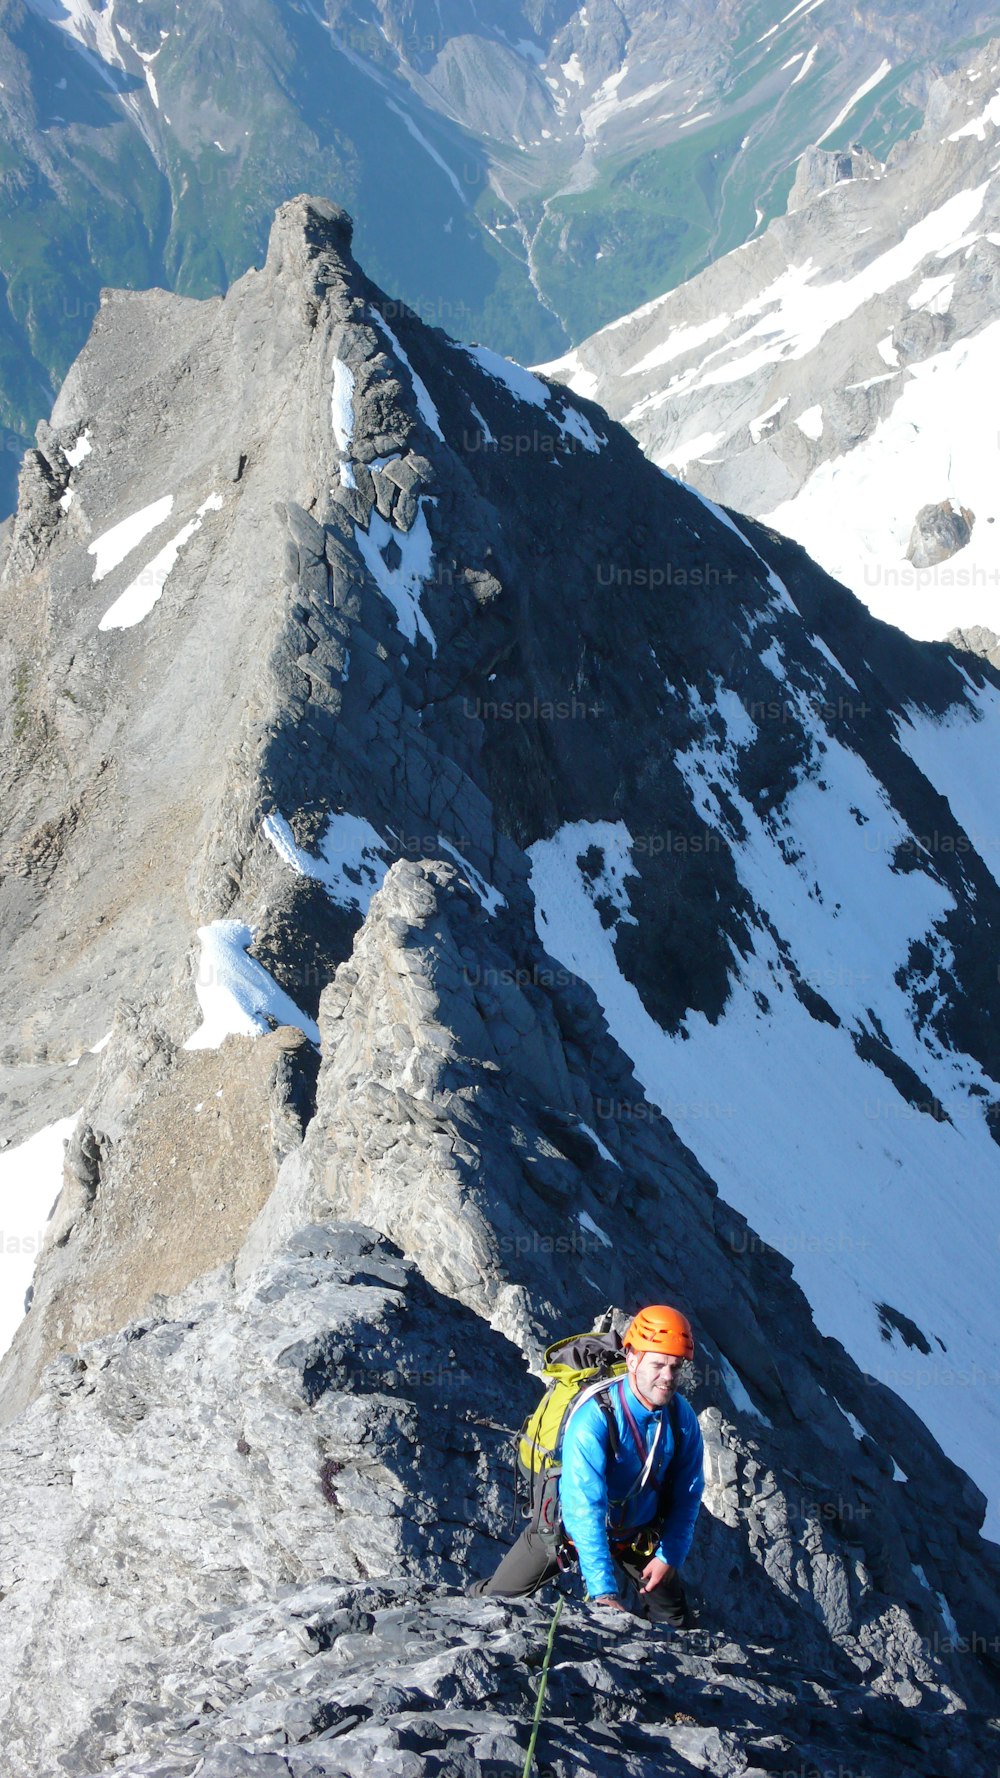 스위스 알프스의 아름다운 여름날 가파르고 노출된 바위 능선의 높은 고산 정상으로 가는 남성 산악인